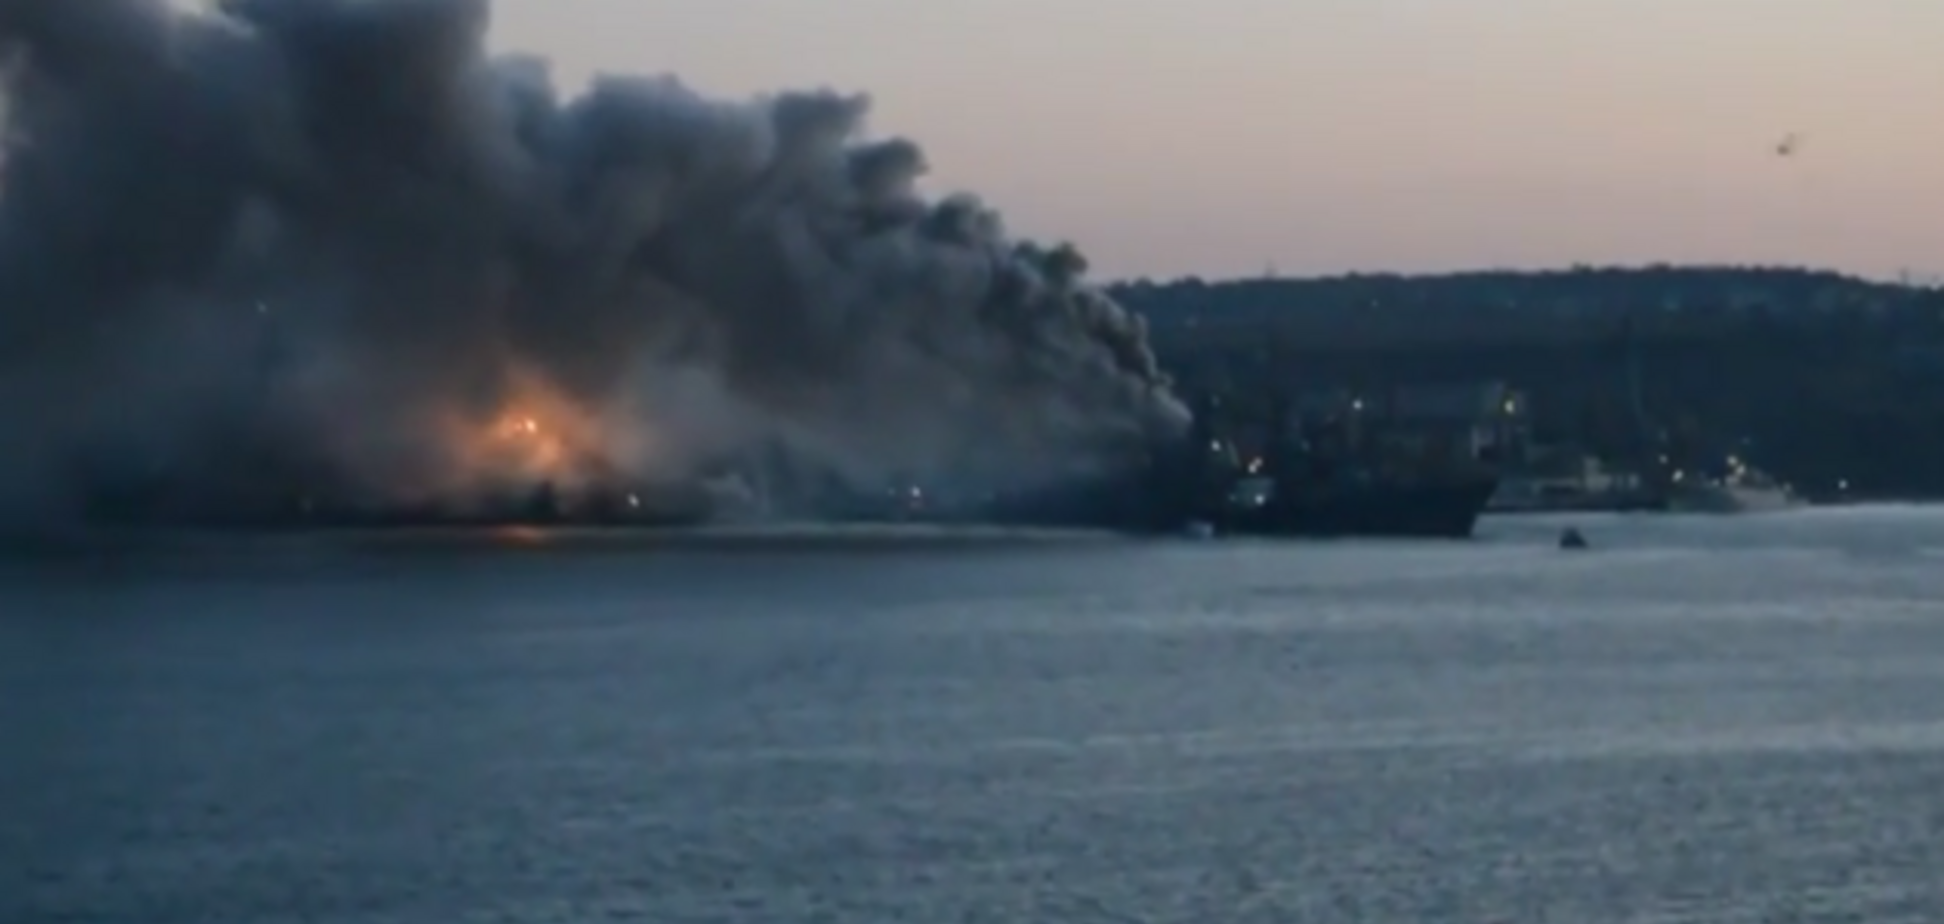 Появилось видео крупного пожара на российском военном корабле 'Керчь' в оккупированном Севастополе